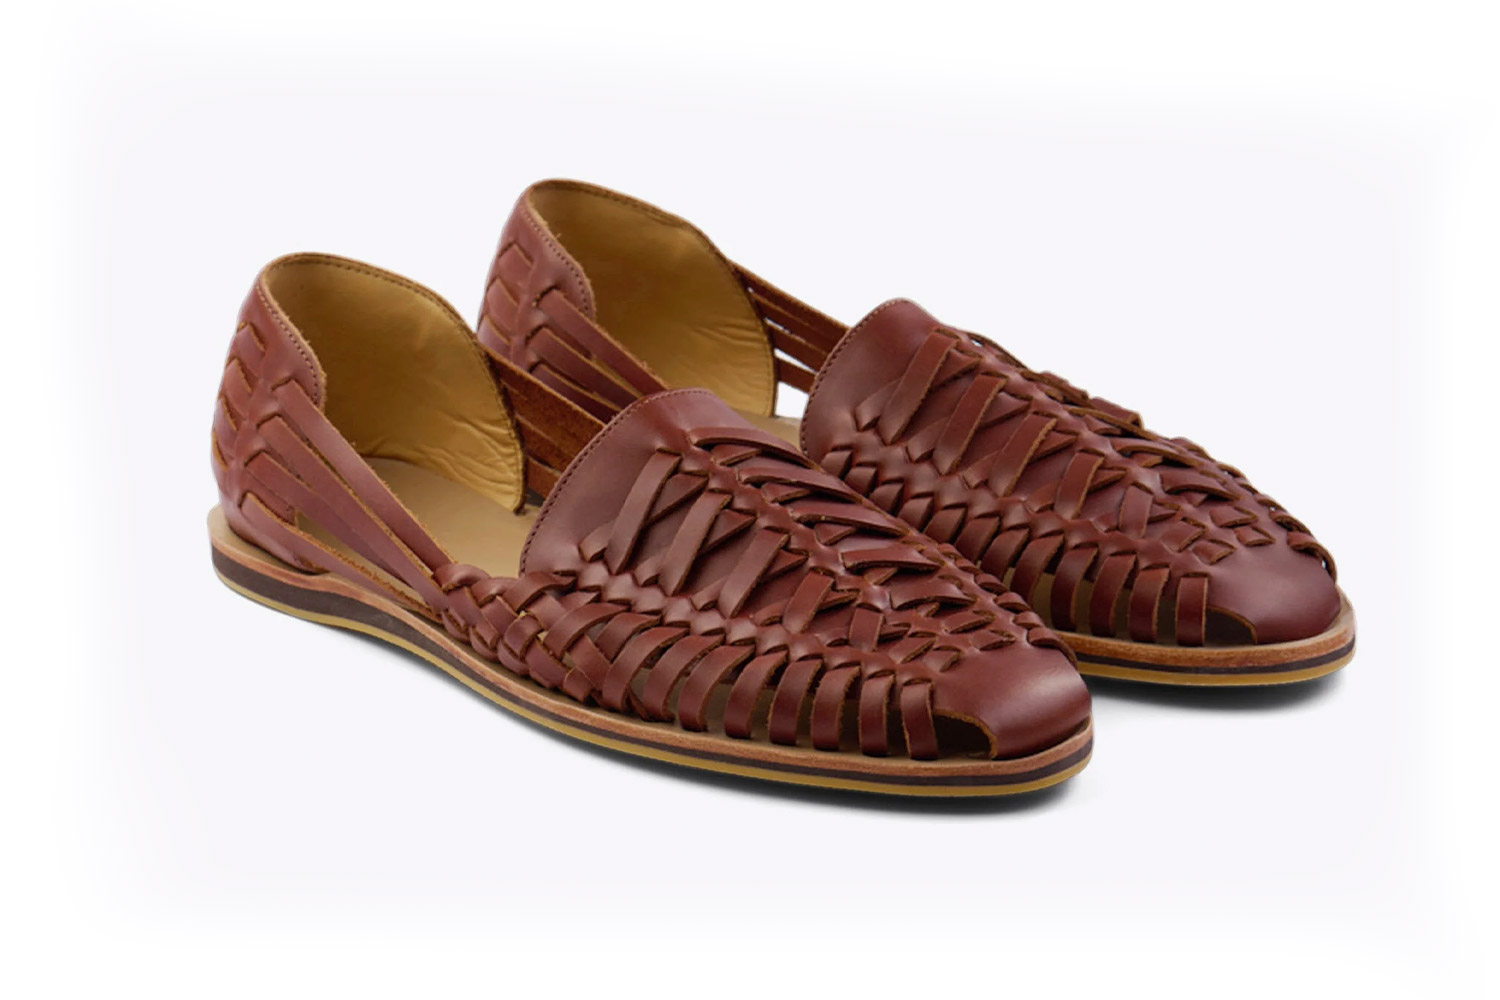 Nisolo Huarache sandals